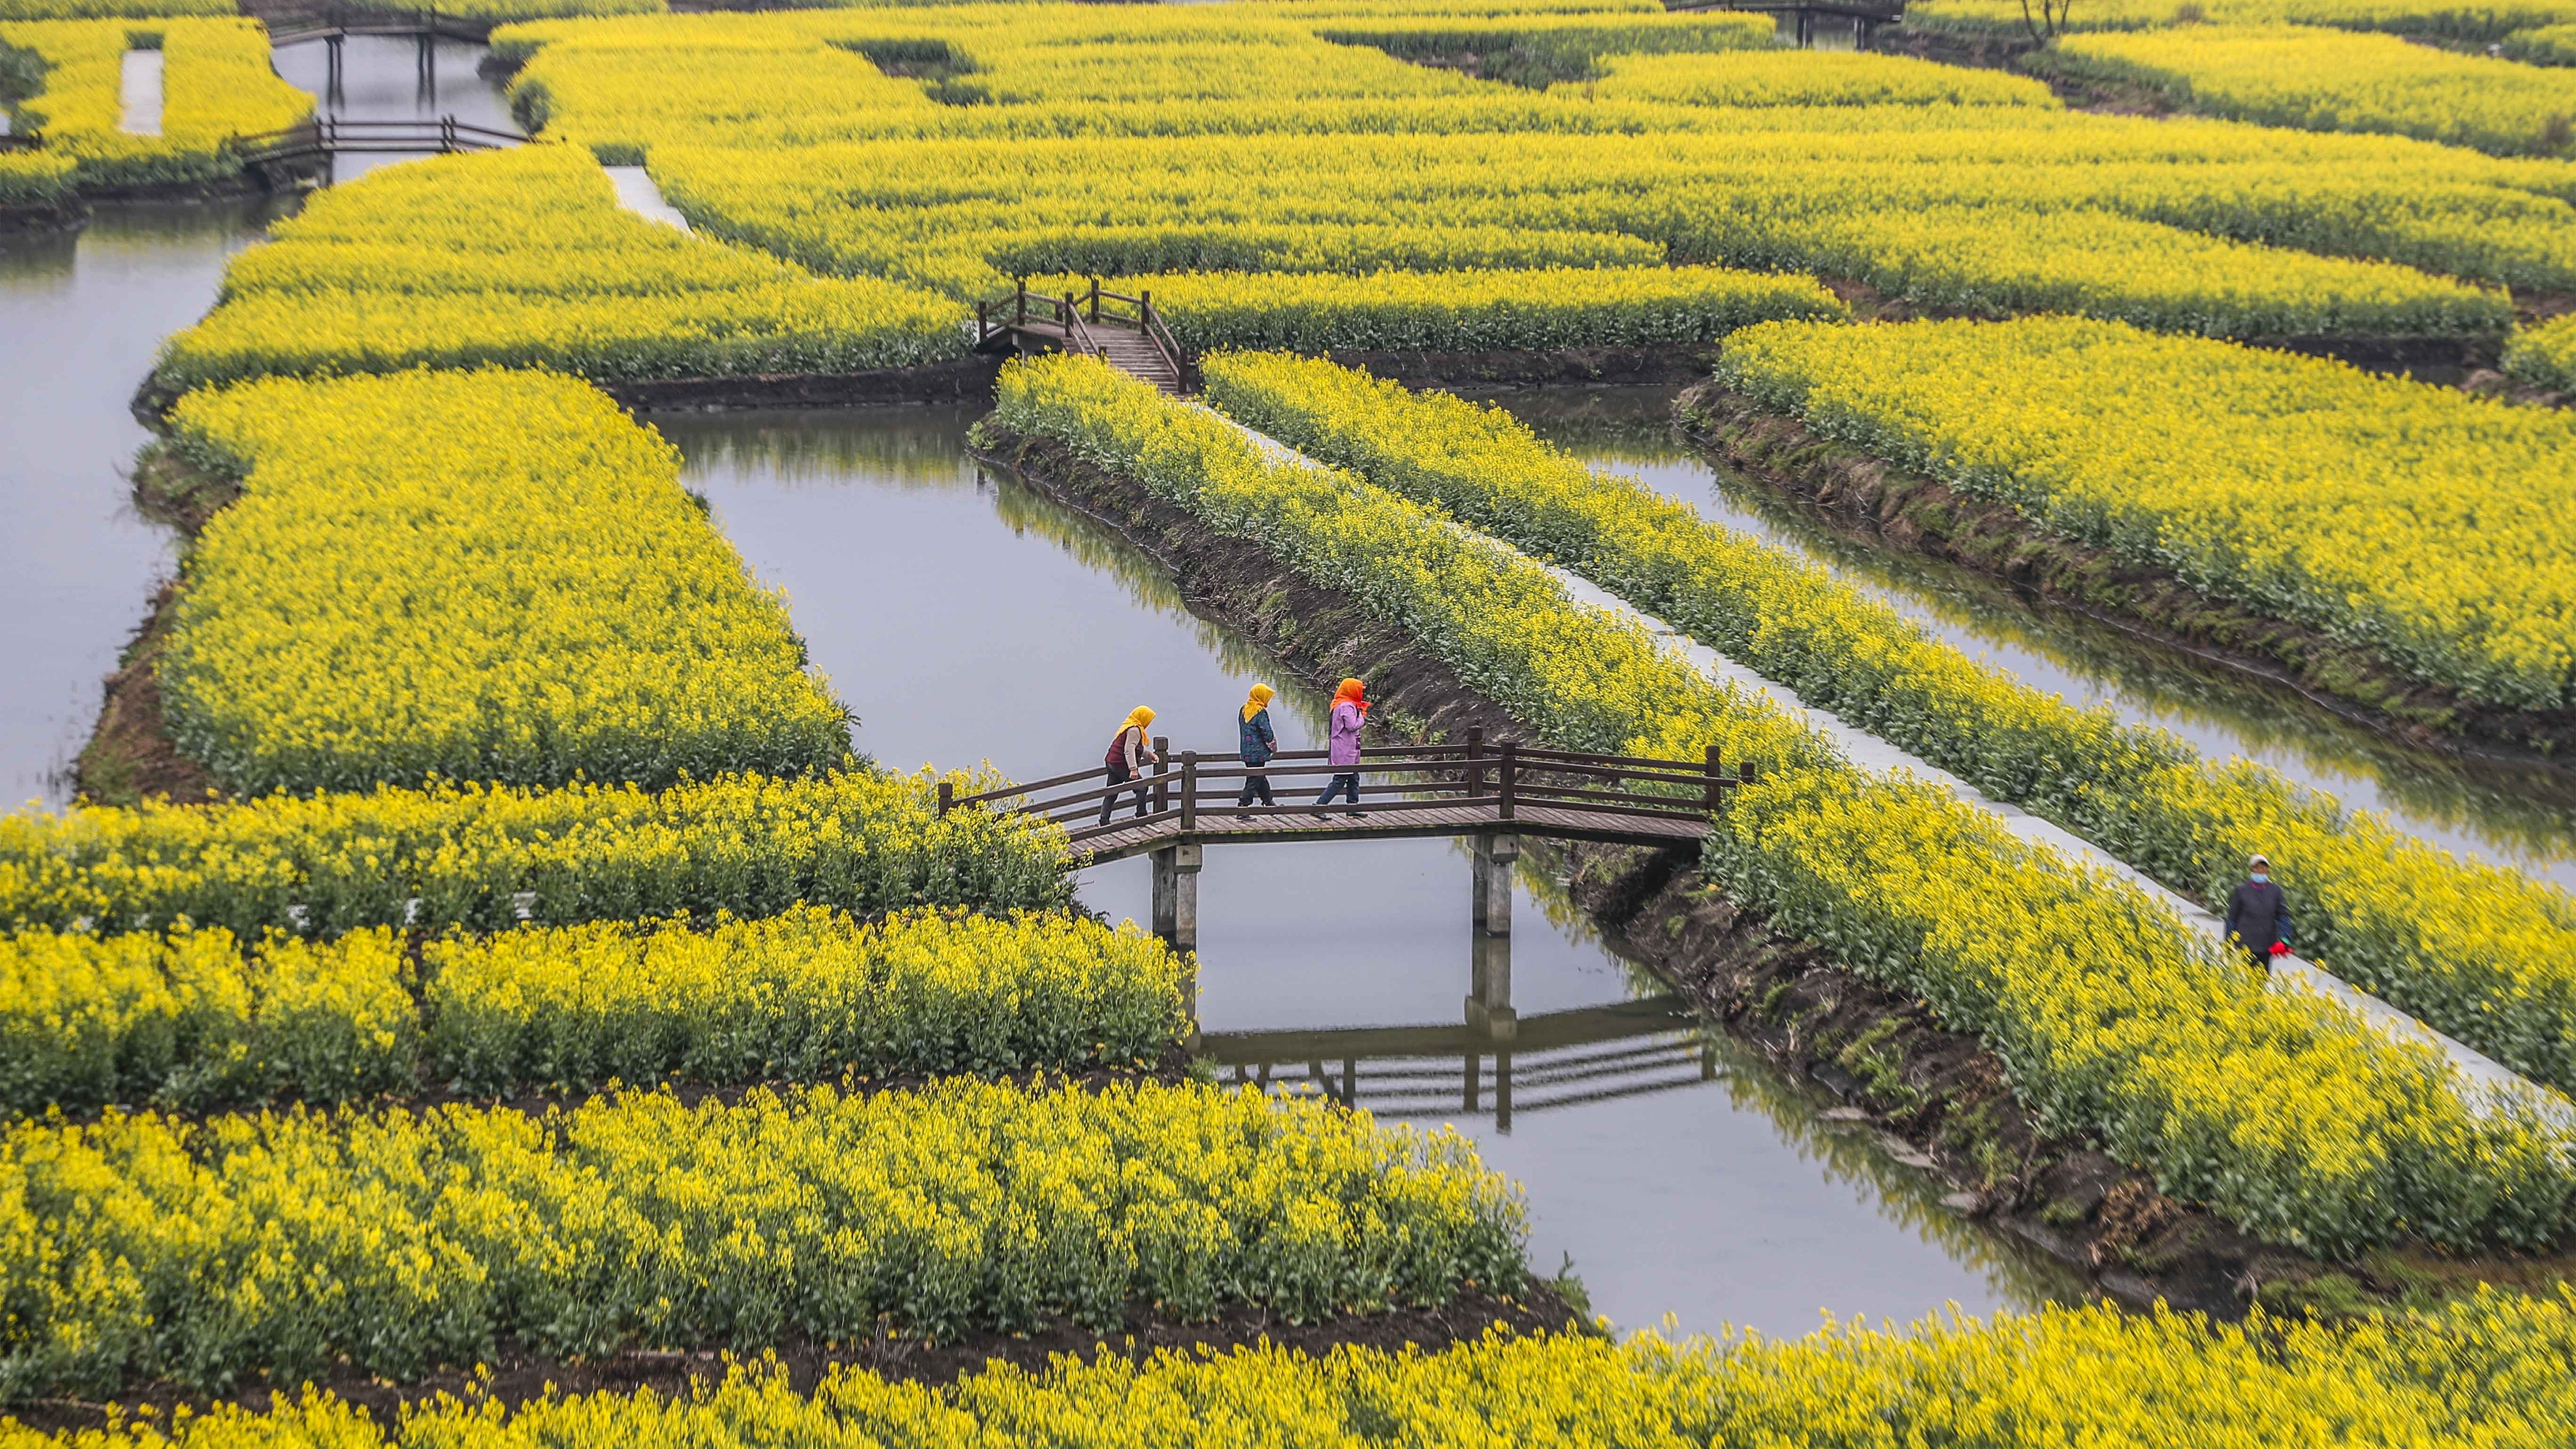 View of rapeseed flower field in Xinghua, Taizhou, east China's Jiangsu Province, March 18, 2022. /CFP